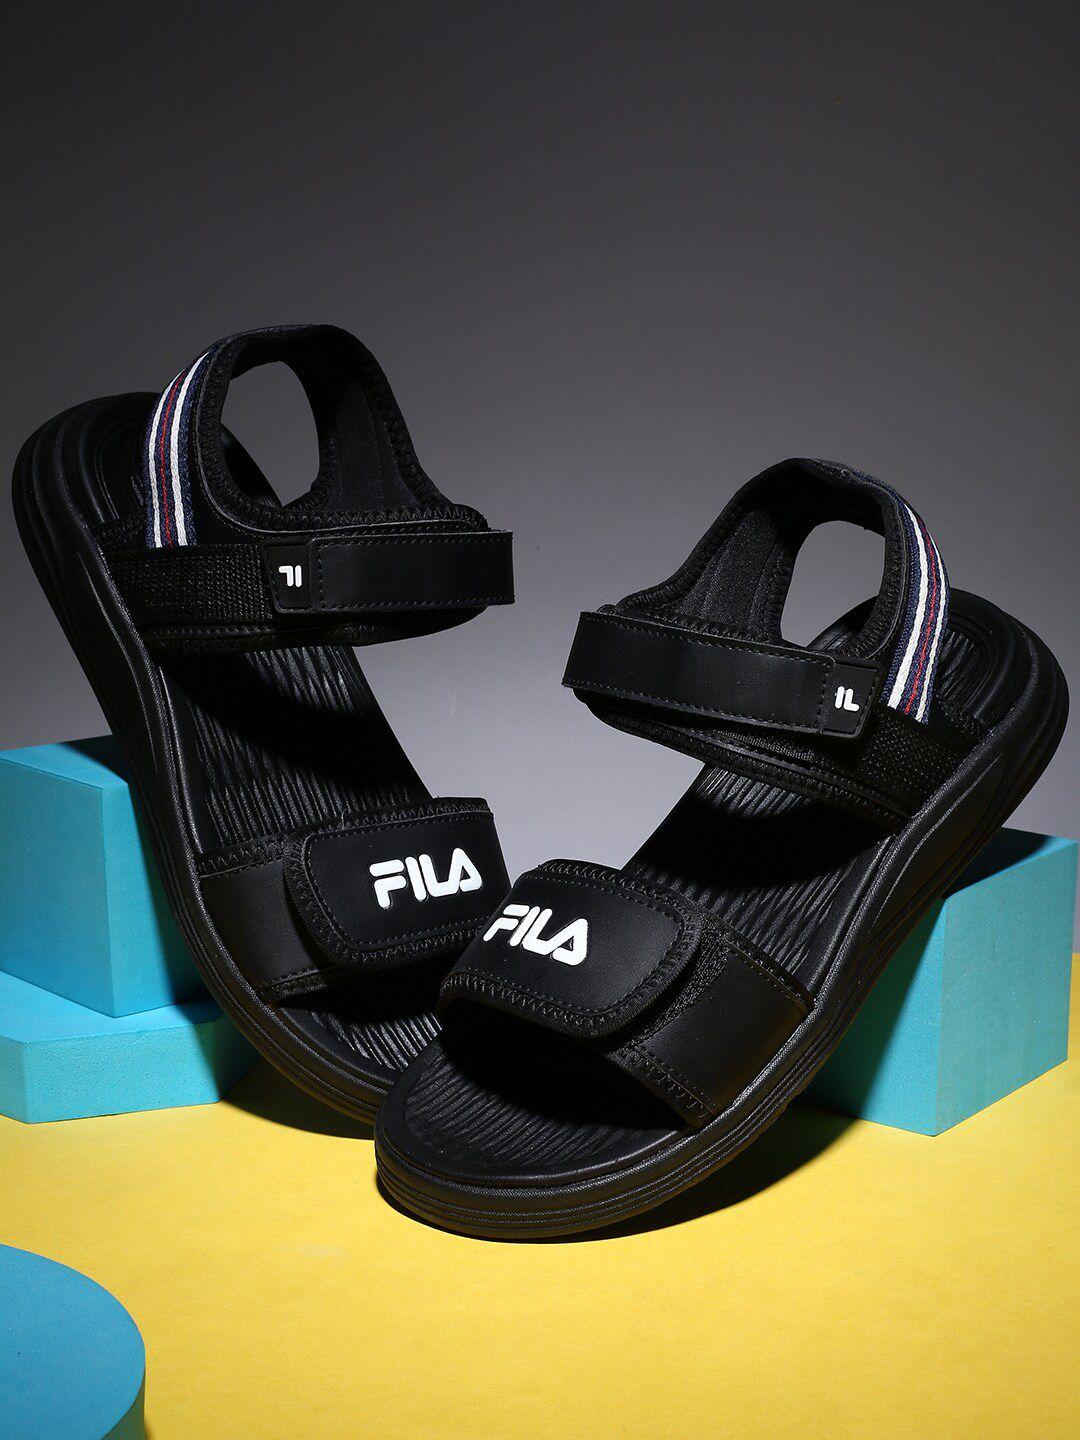 fila-men-textured-comfort-sandals